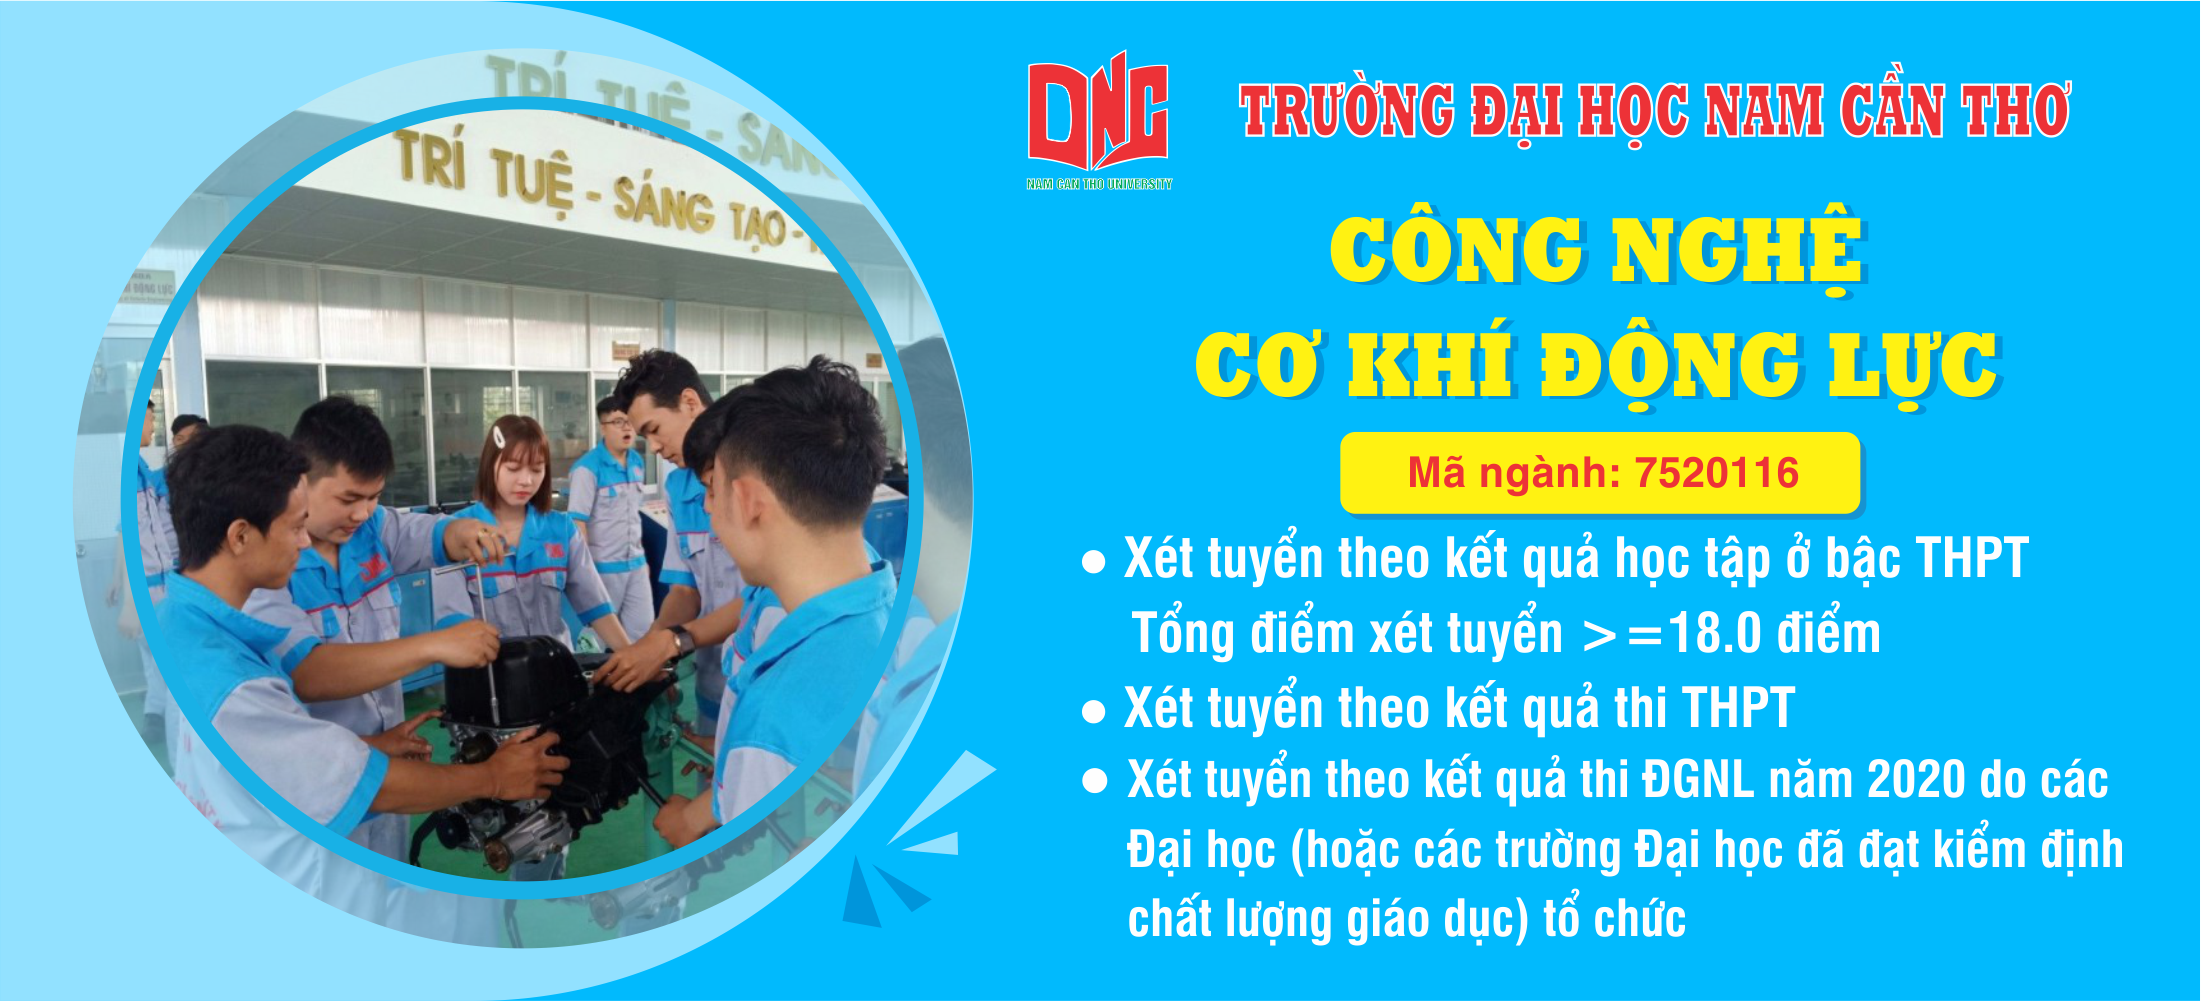 Đại học Nam Cần Thơ là một trong những trường đại học hàng đầu của Việt Nam với chương trình đào tạo đa dạng và chất lượng. Khám phá hình ảnh liên quan đến đại học Nam Cần Thơ để có cái nhìn sâu sắc và tự hào về trường đại học này.